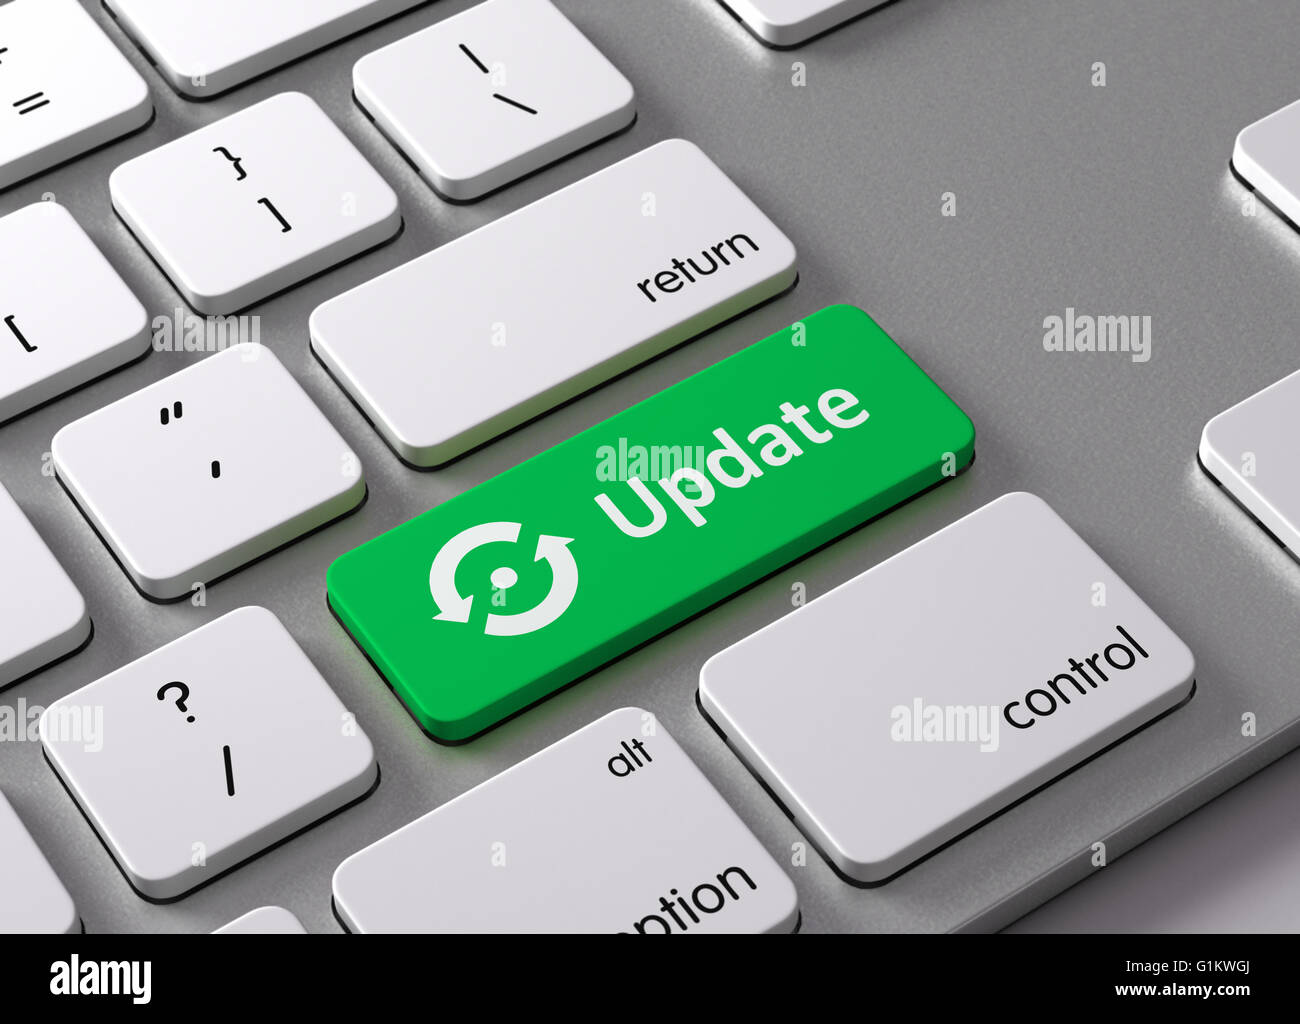 Eine Tastatur mit einem grünen Button aktualisieren Stockfotografie - Alamy